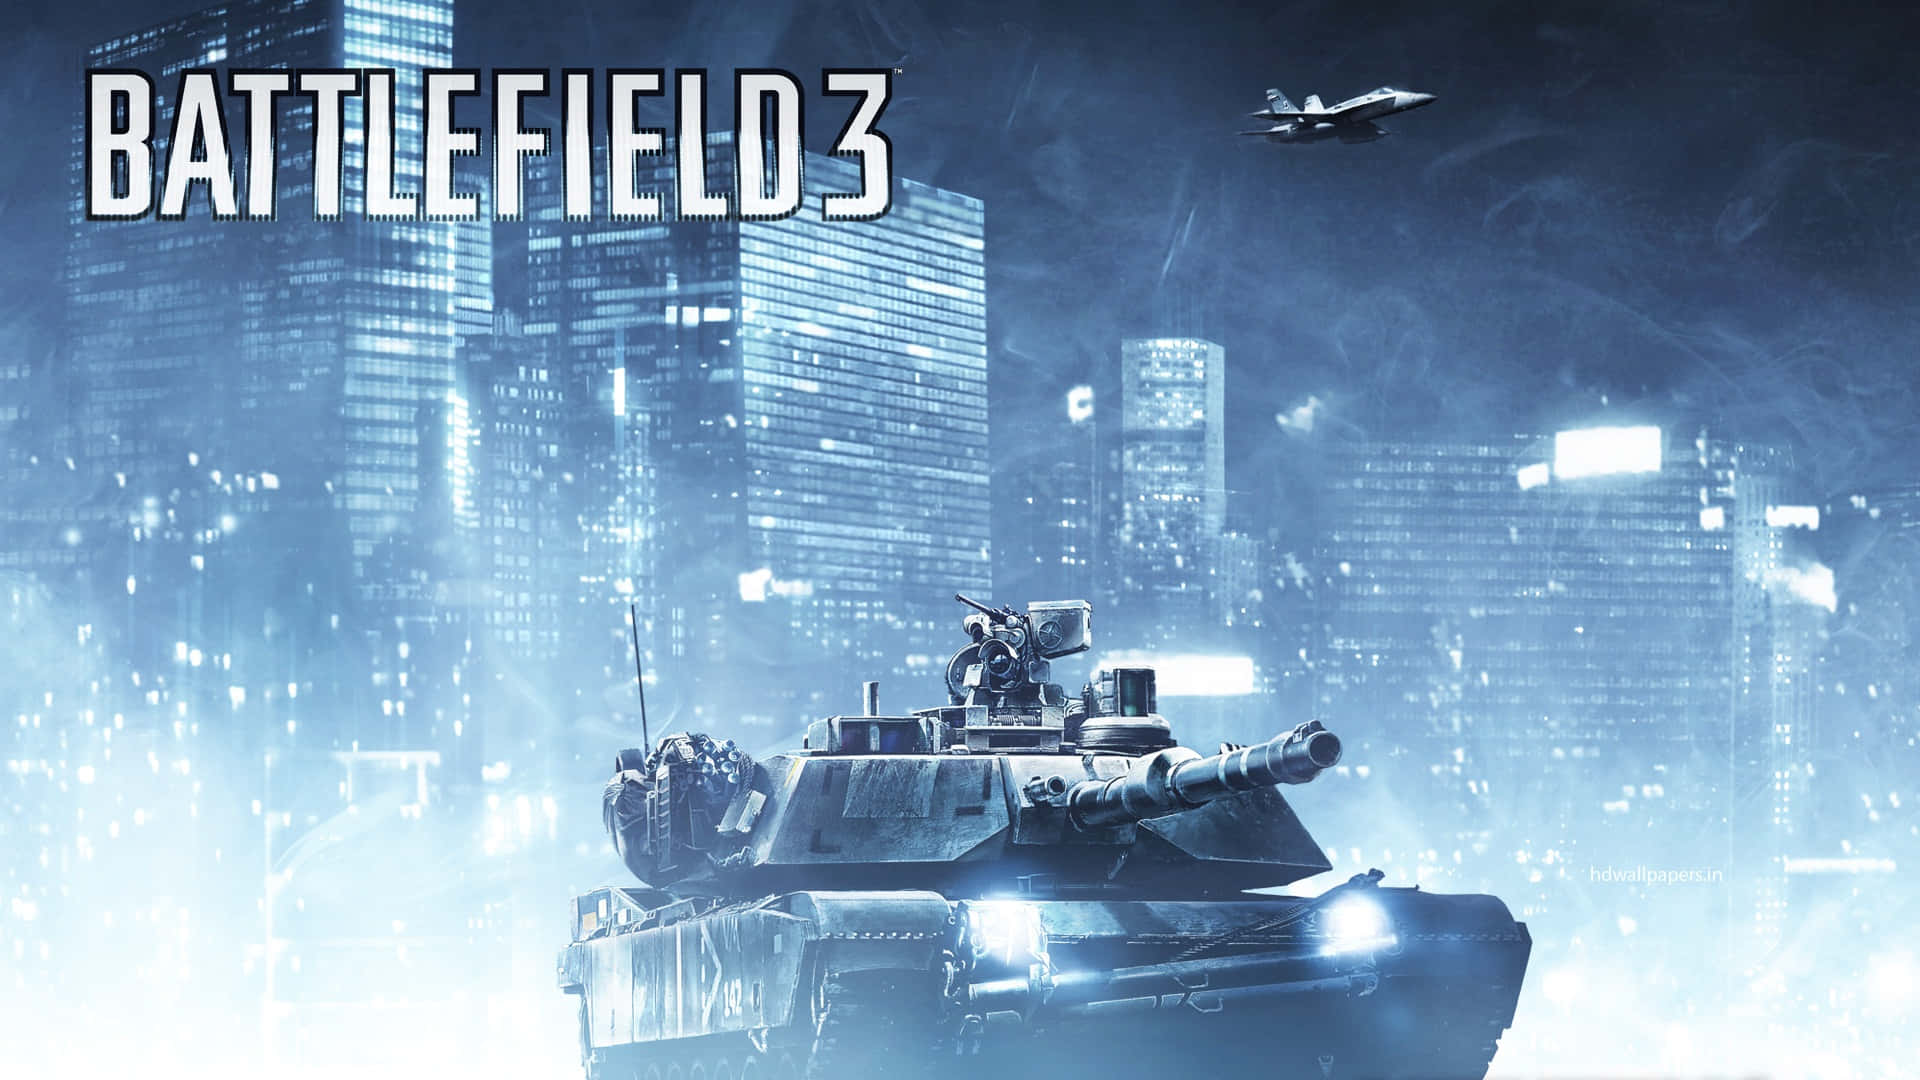 Papelde Parede Battlefield 3 Com Tanque E Logotipo. Papel de Parede